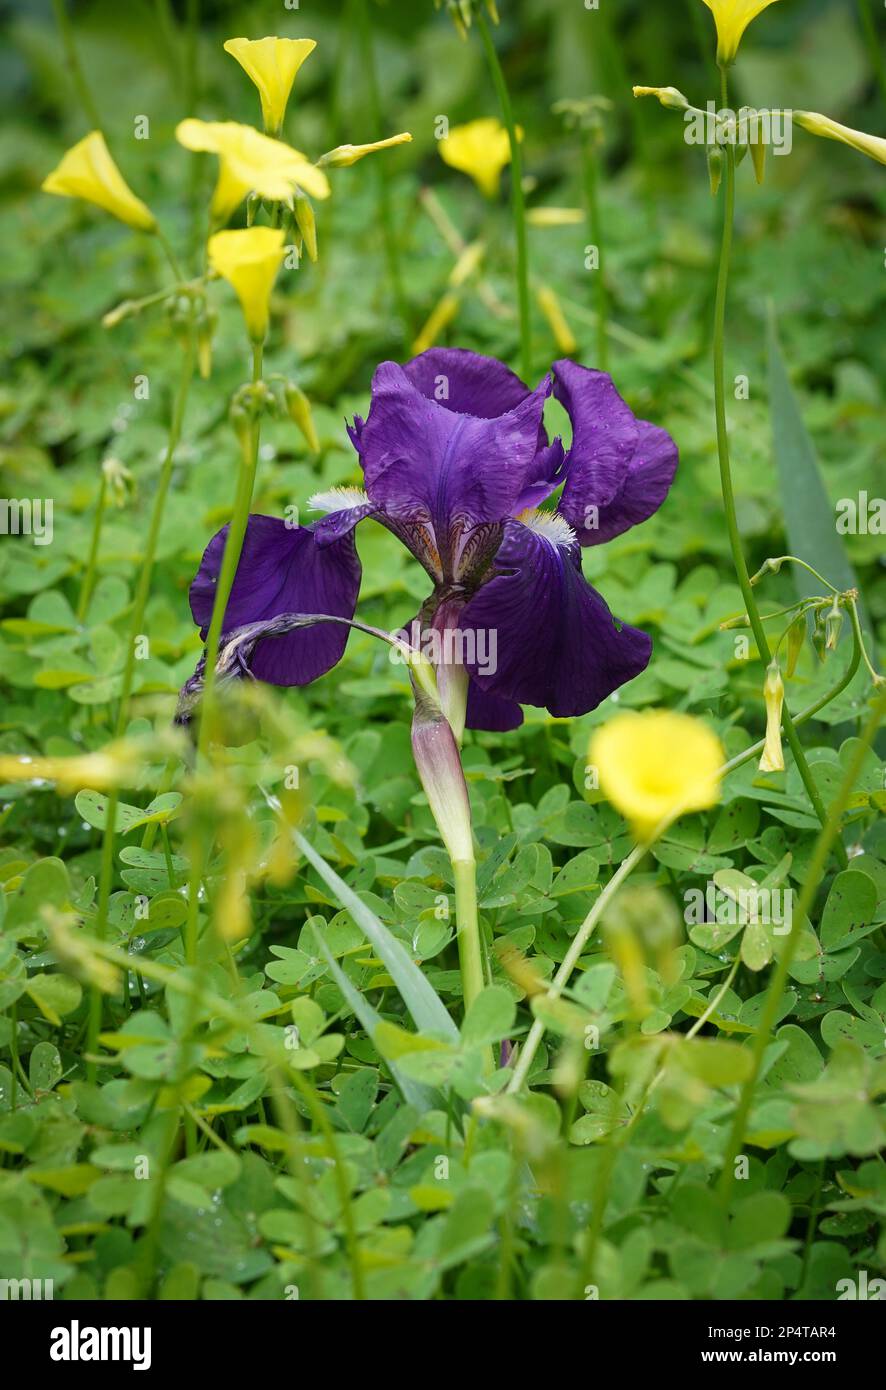 Fleur de l'iris allemand, Iris germanica, iris barbu, dans le jardin méditerranéen sauvage. Avec coupe de beurre des Bermudes autour, Espagne. Banque D'Images